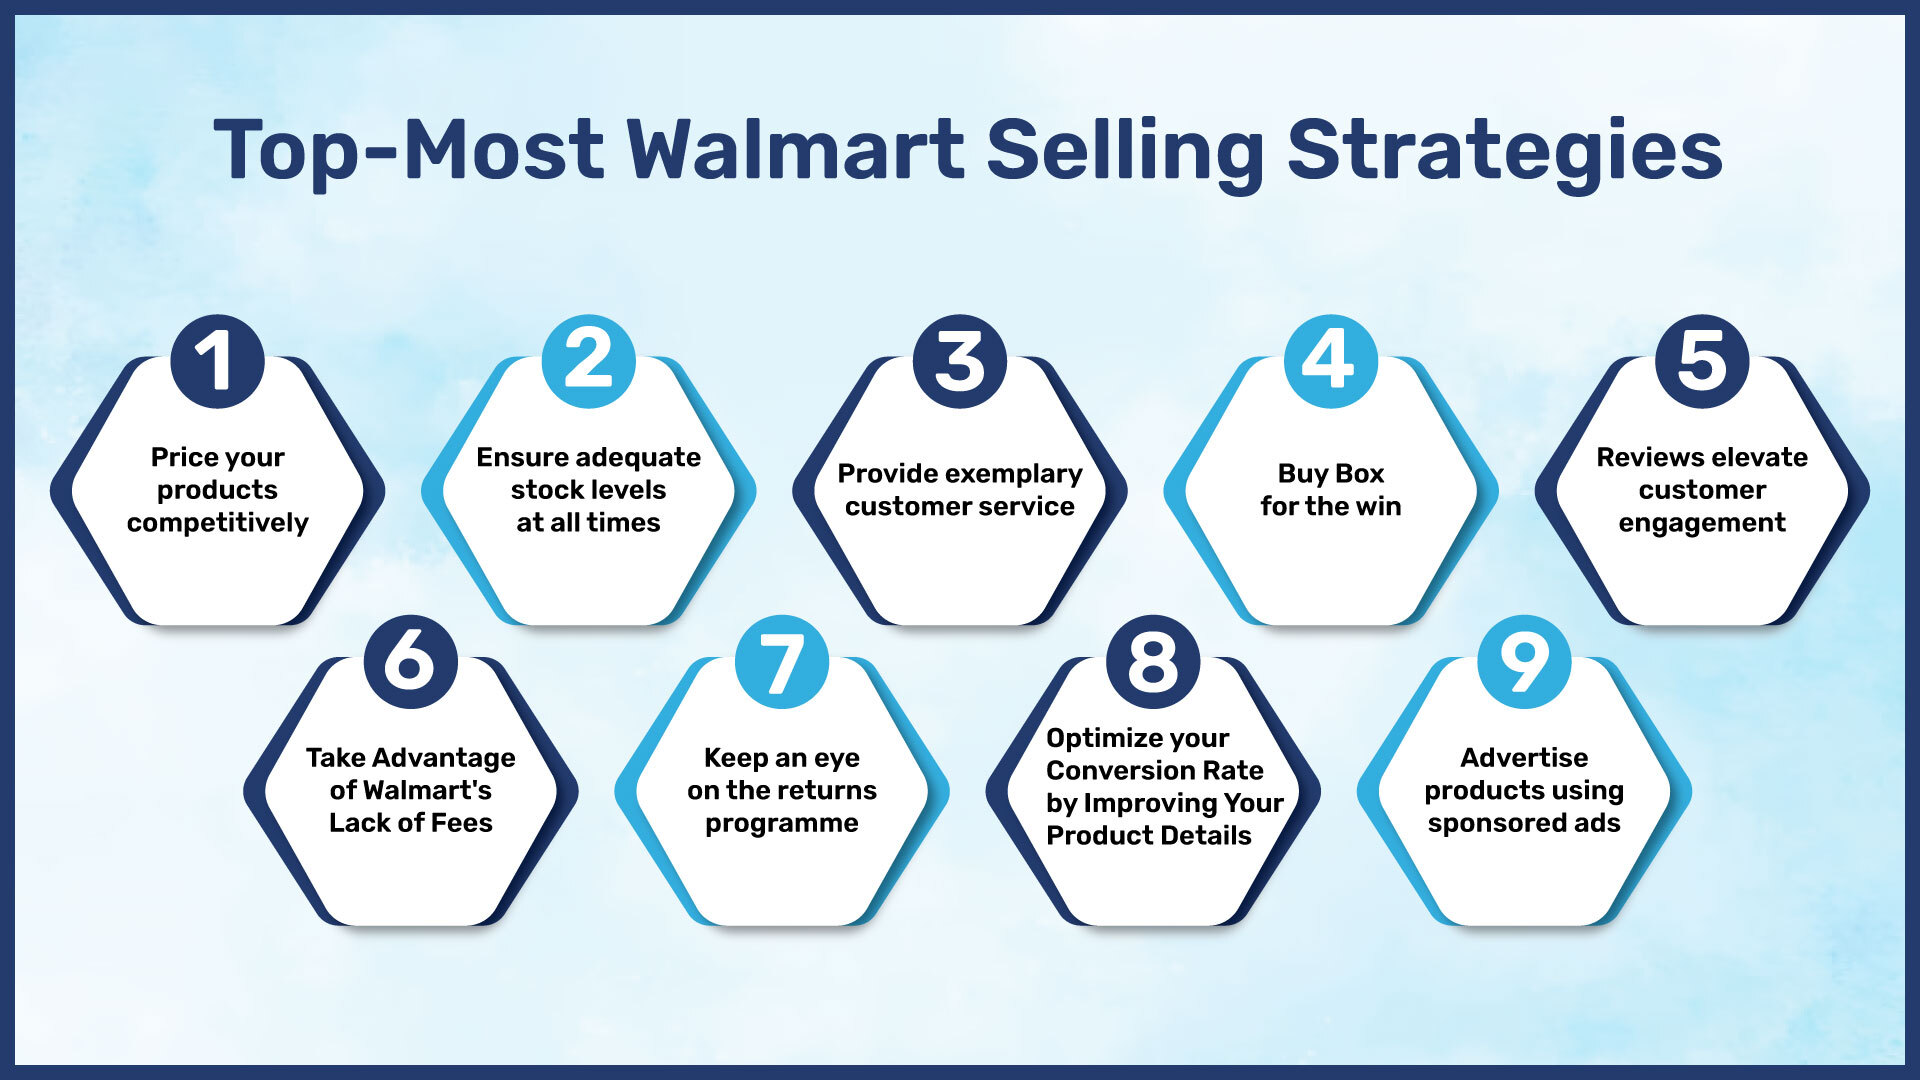 Top-most Walmart selling strategies